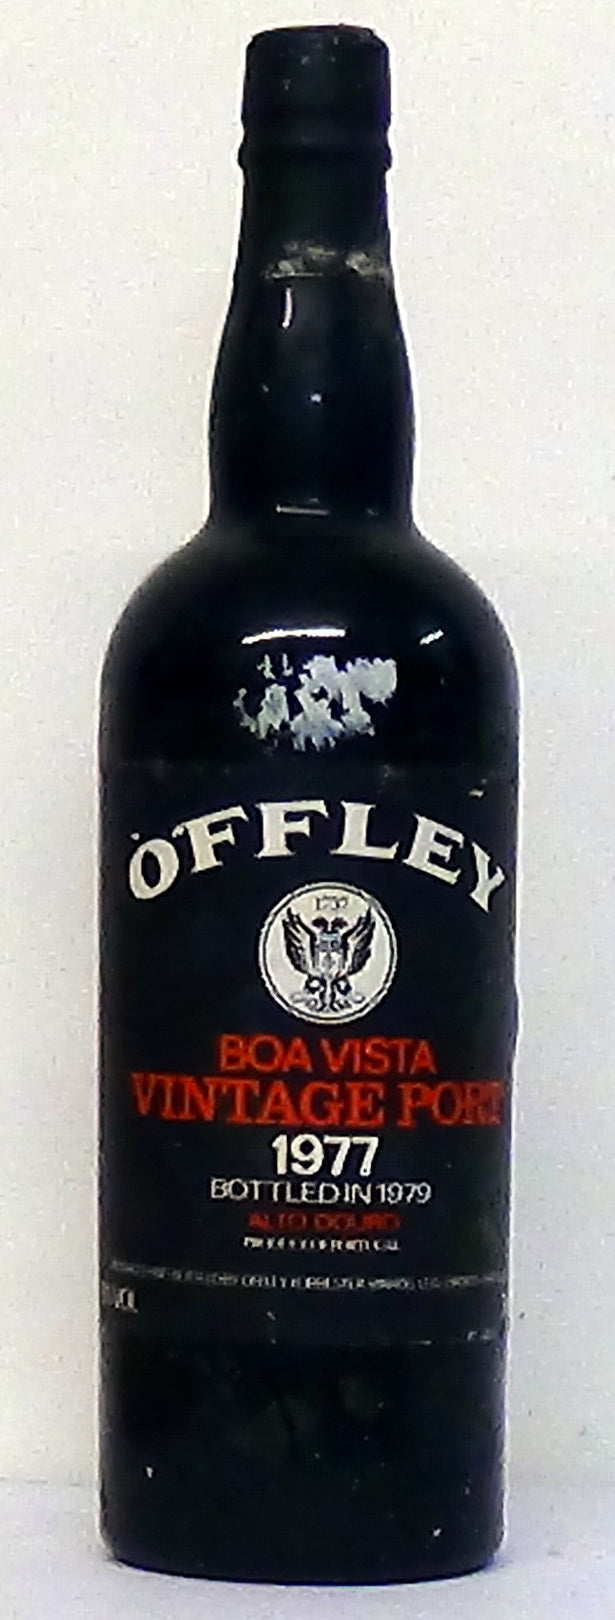 1977 Offlley Boa Vista Vintage Port